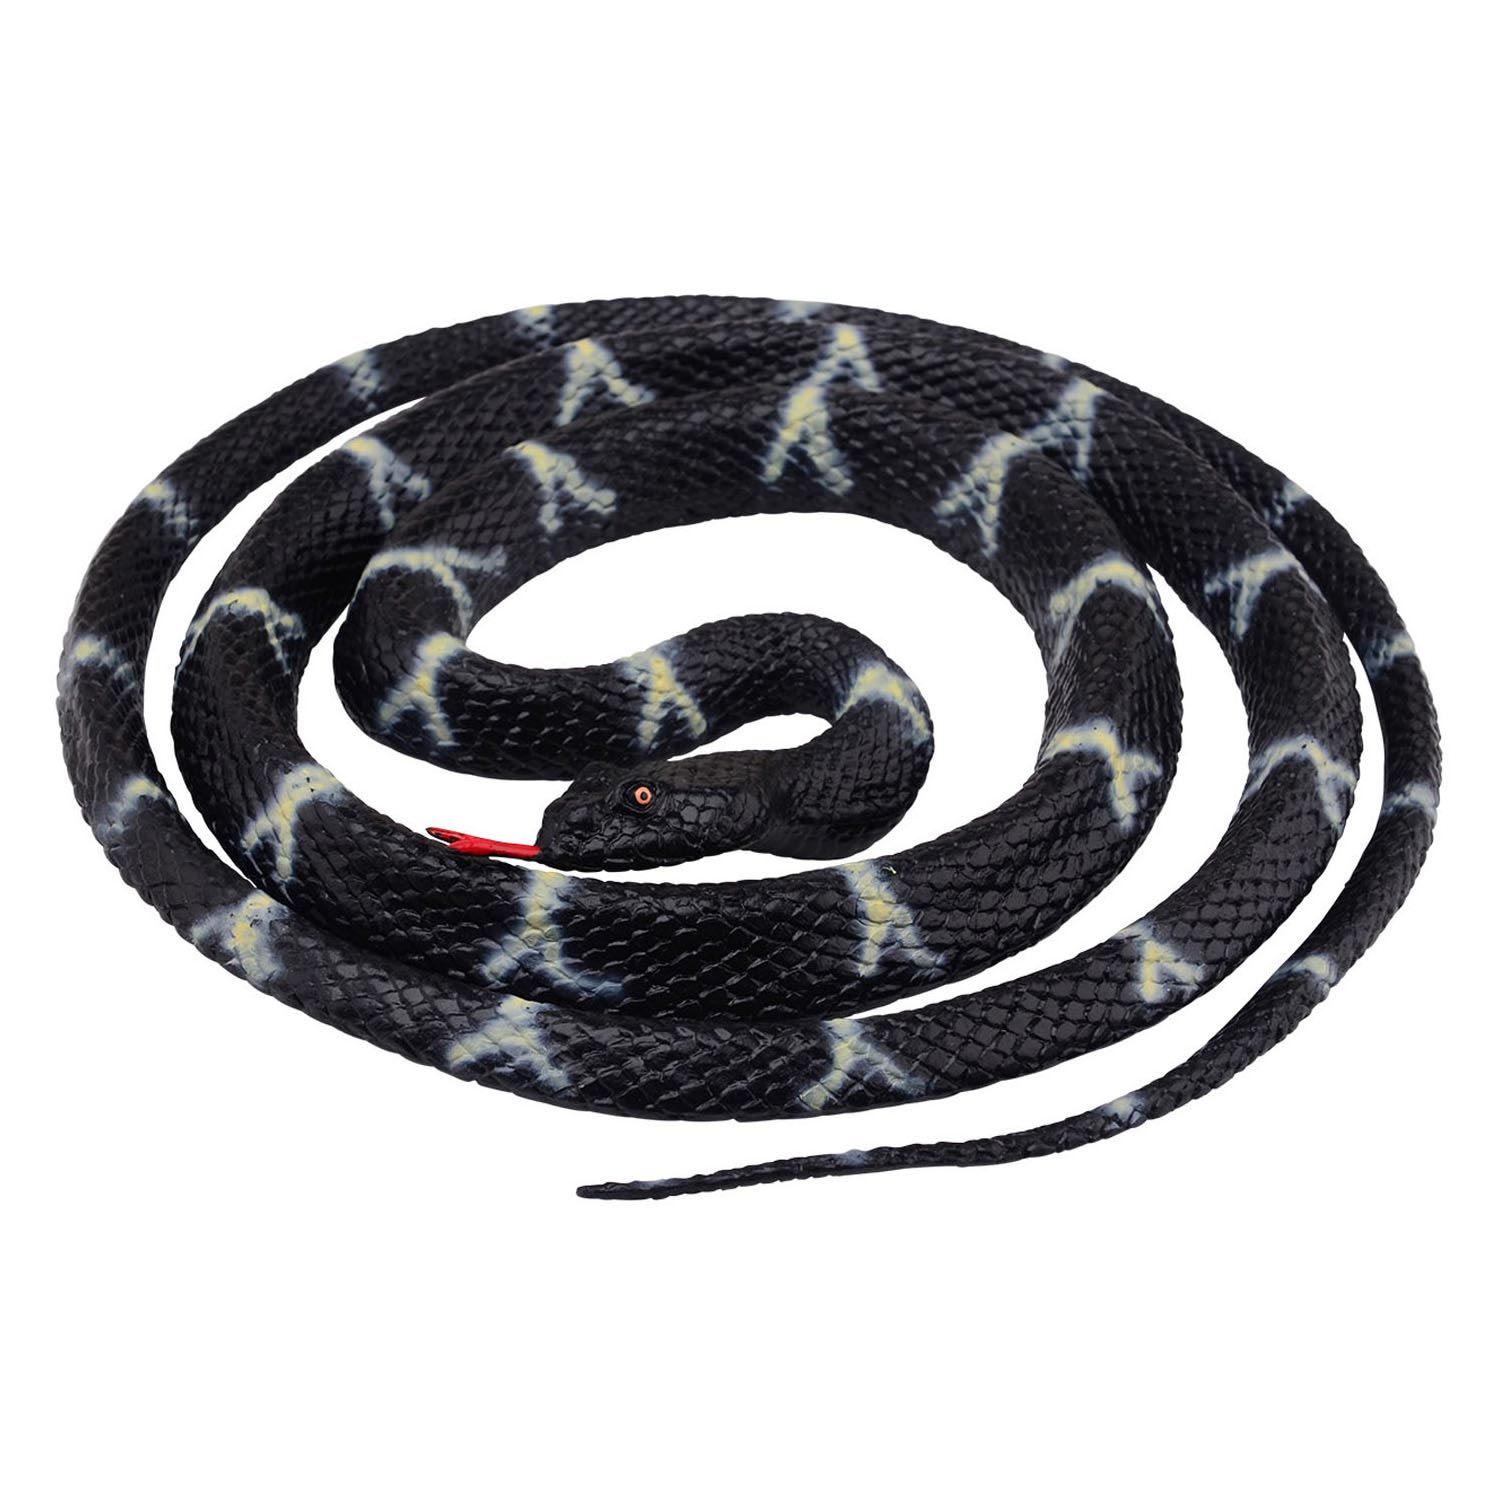 Serpent jouet enroulé, 20 cm